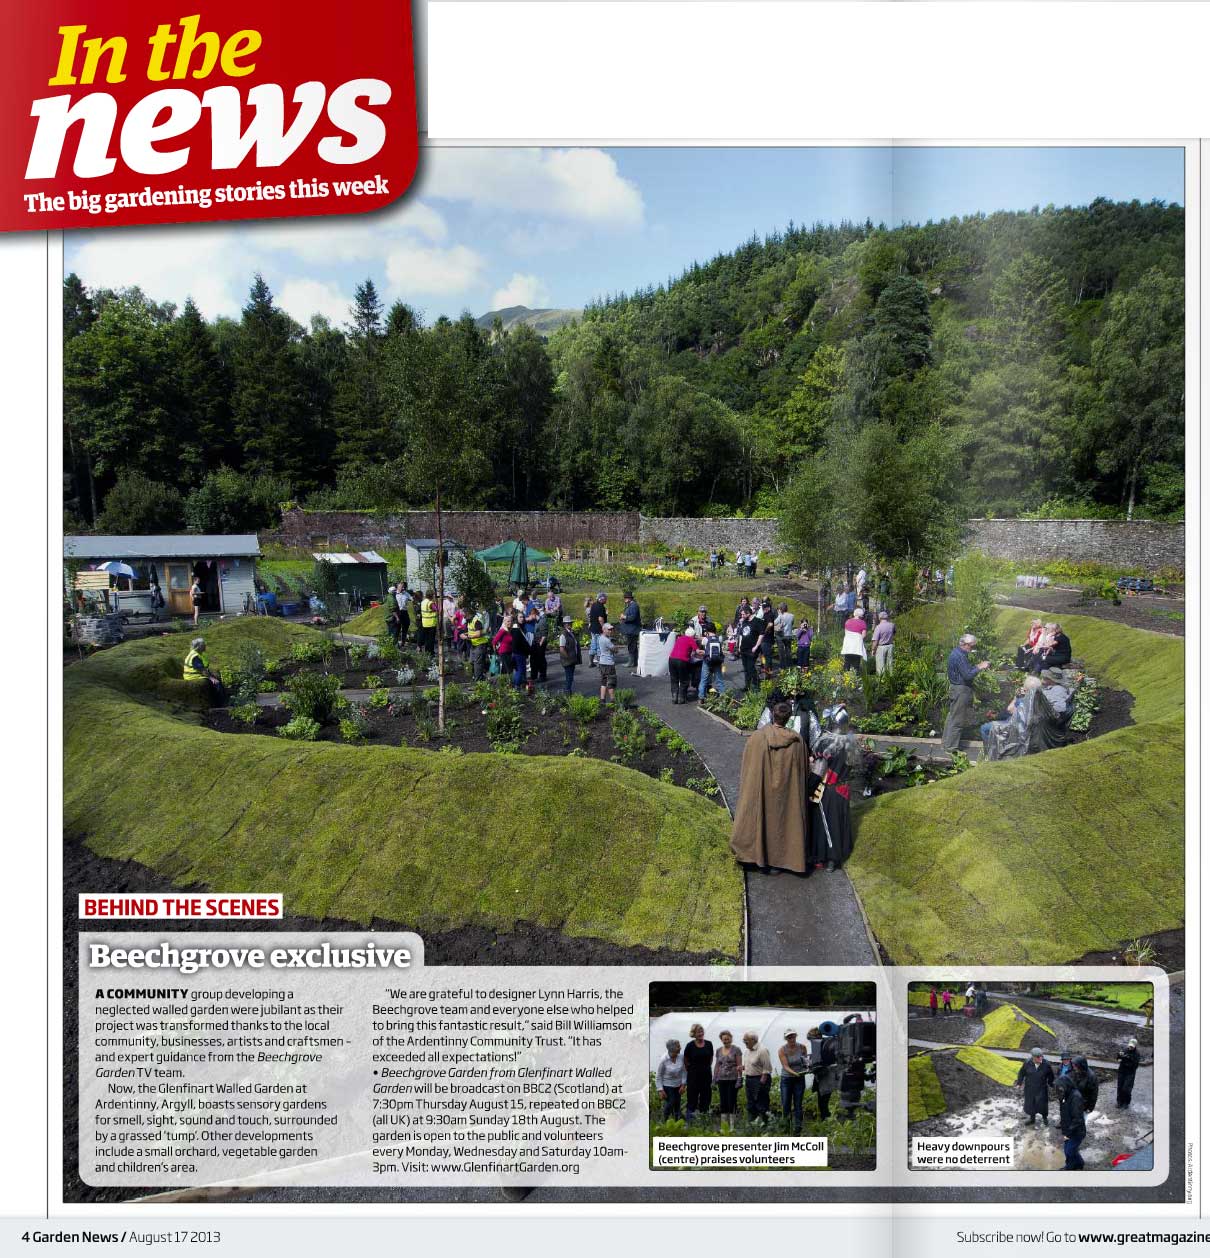 Glenfinart Walled Garden featured in Garden News